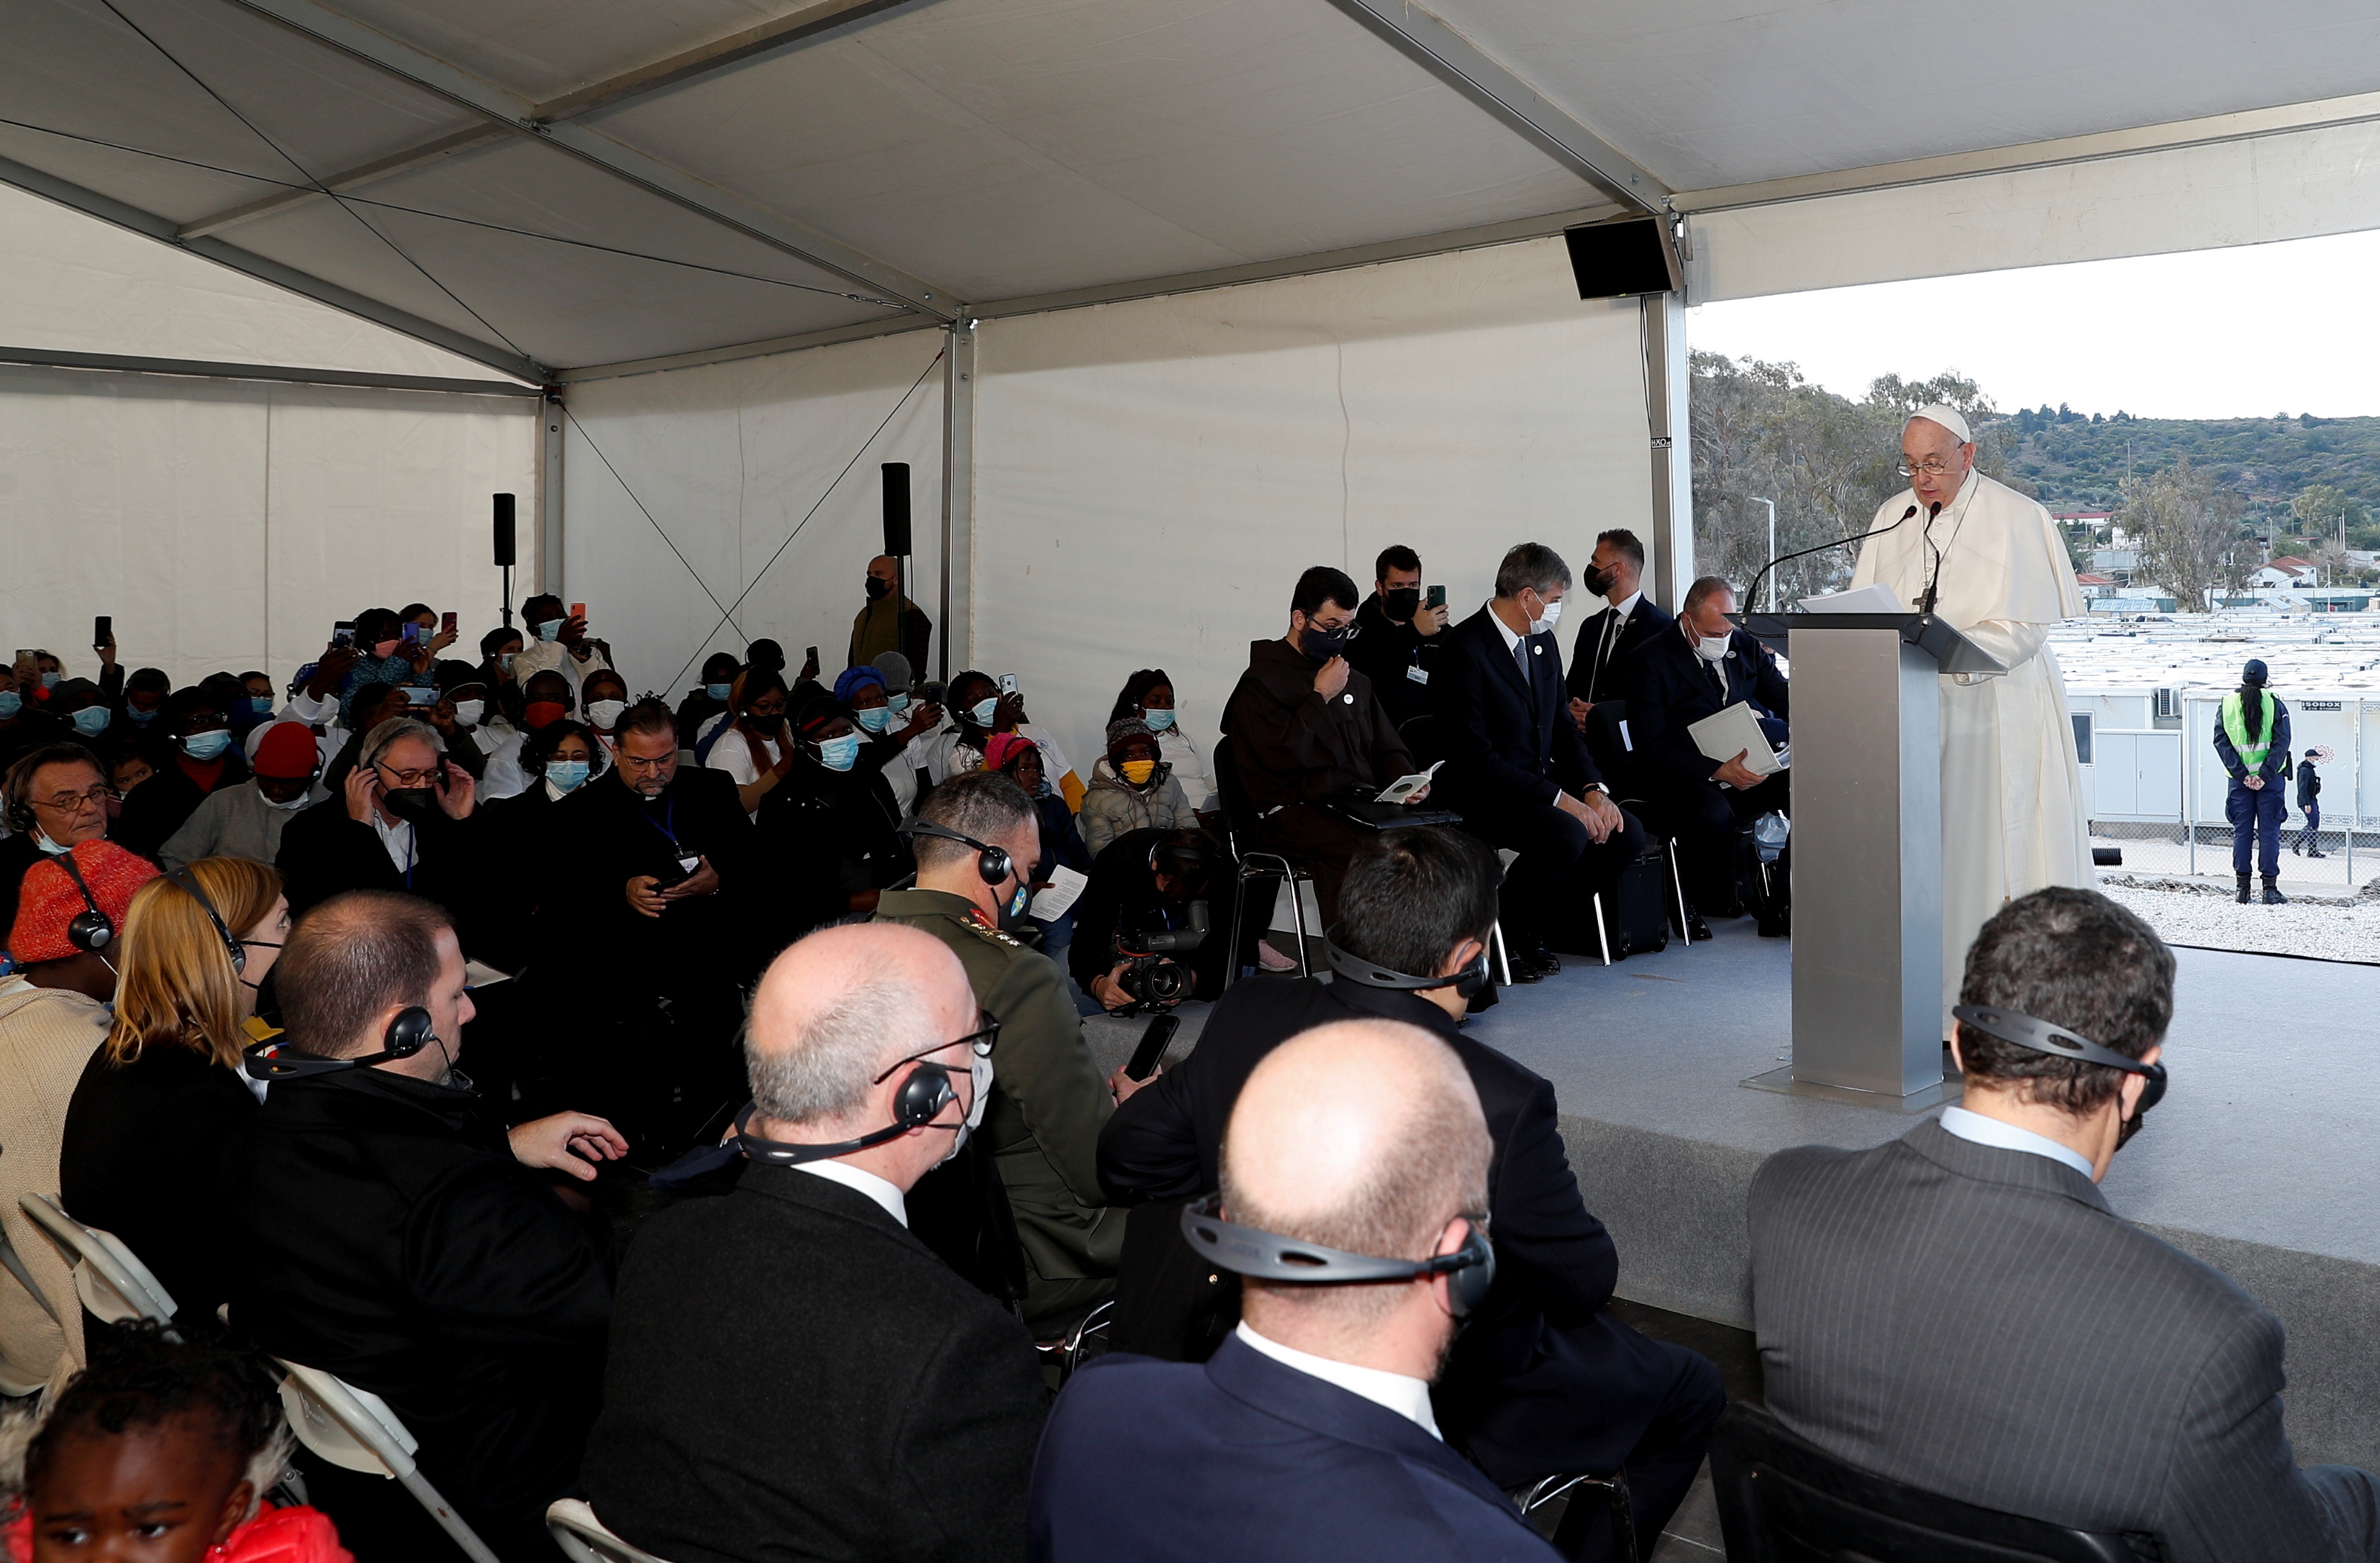 Pous Franciskus praat tydens sy besoek aan die Mavrovouni-kamp vir vlugtelinge en migrante op die eiland Lesbos, Griekeland, 5 Desember 2021. REUTERS/Guglielmo Mangiapane